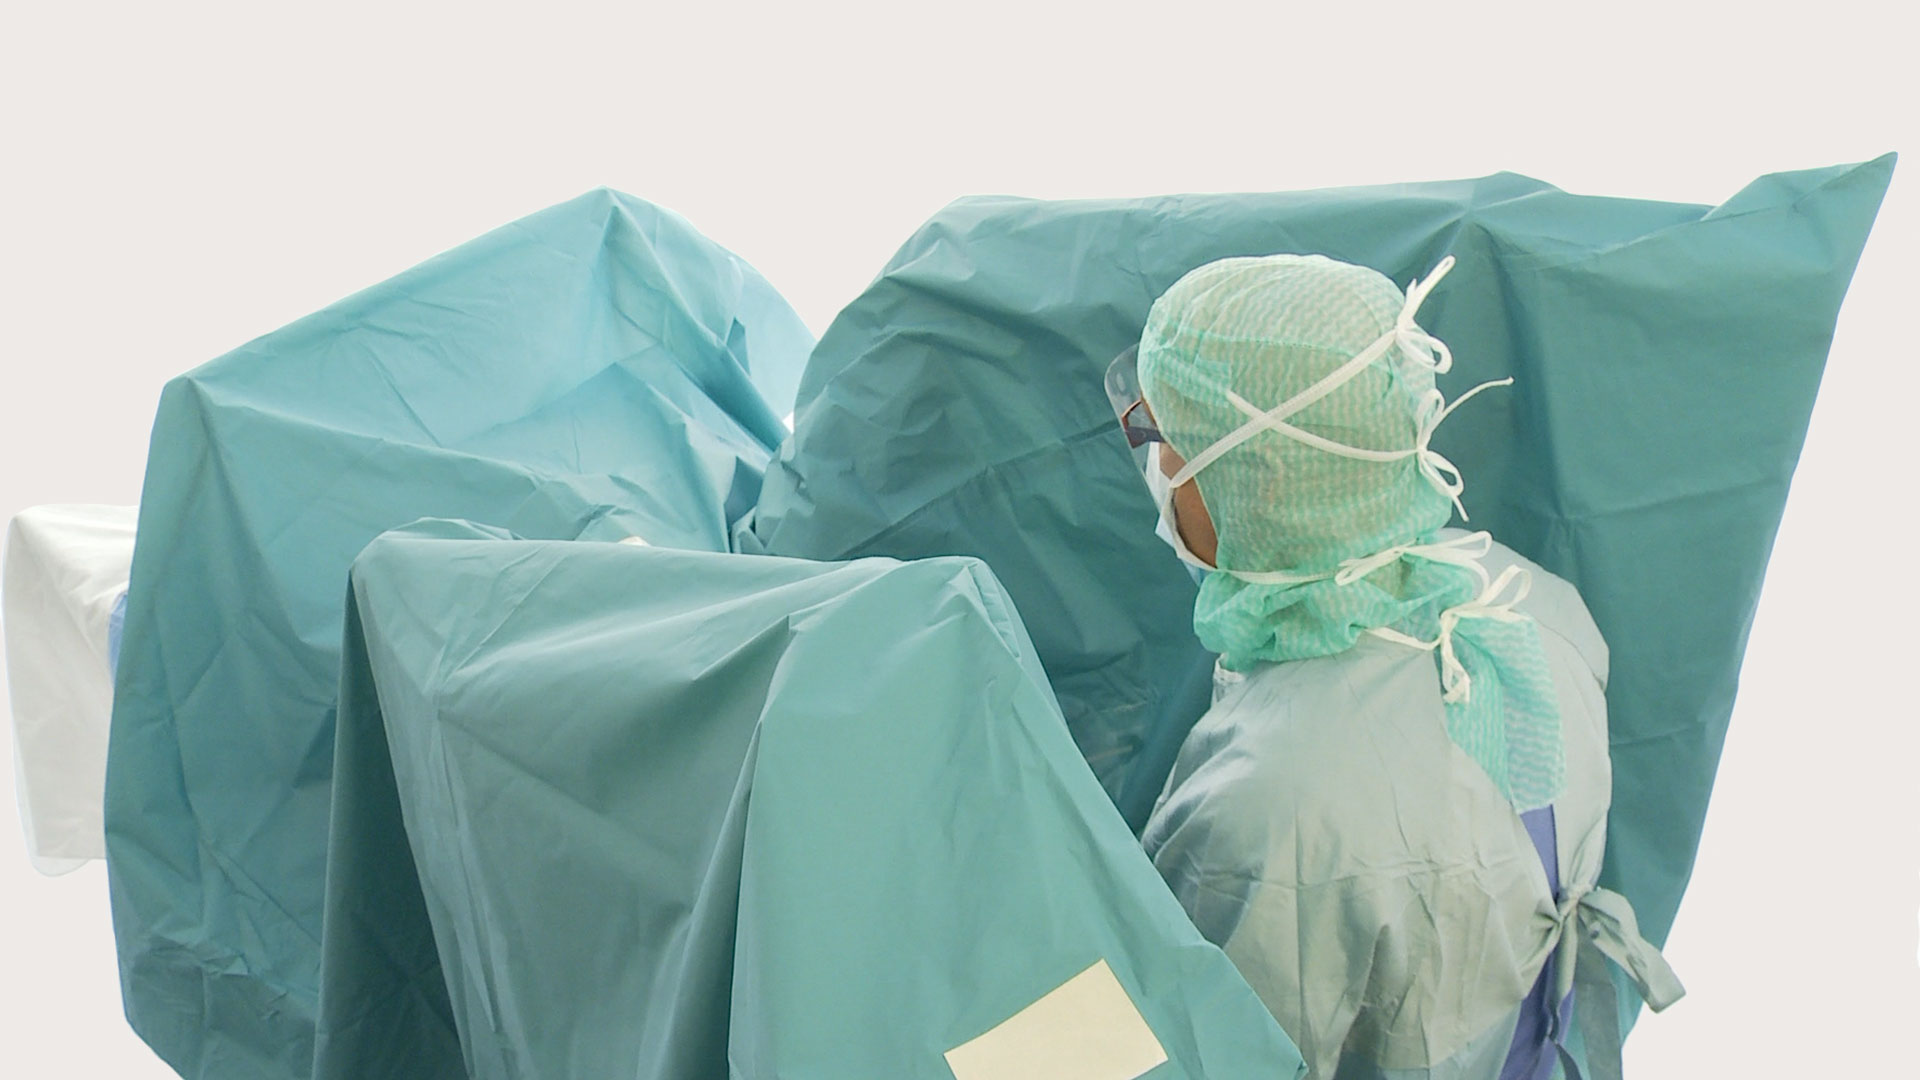 un telo per urologia BARRIER usato durante un intervento chirurgico